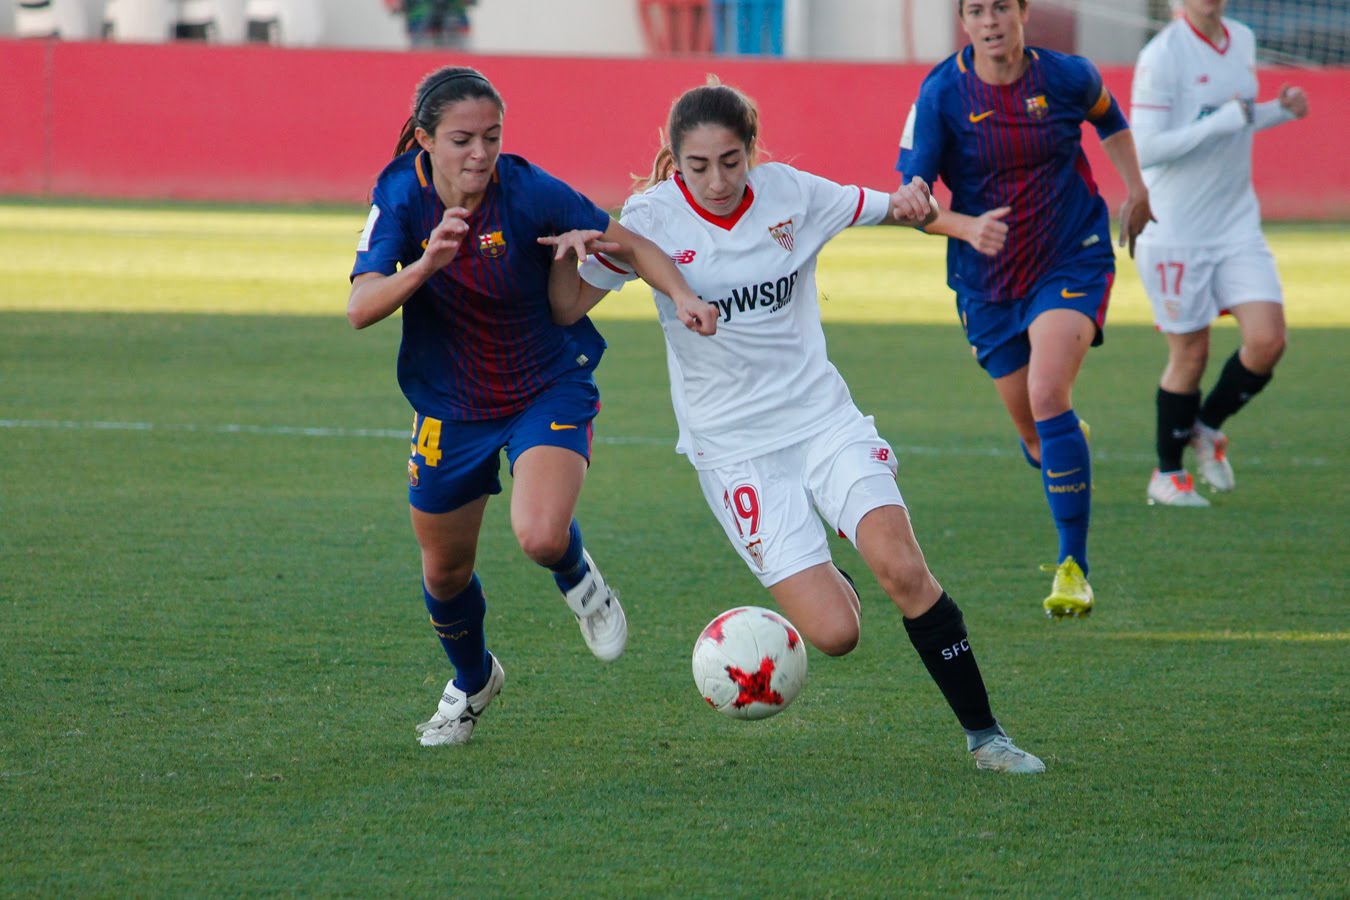 Olga Carmona jugadora Sevilla FC Femenino